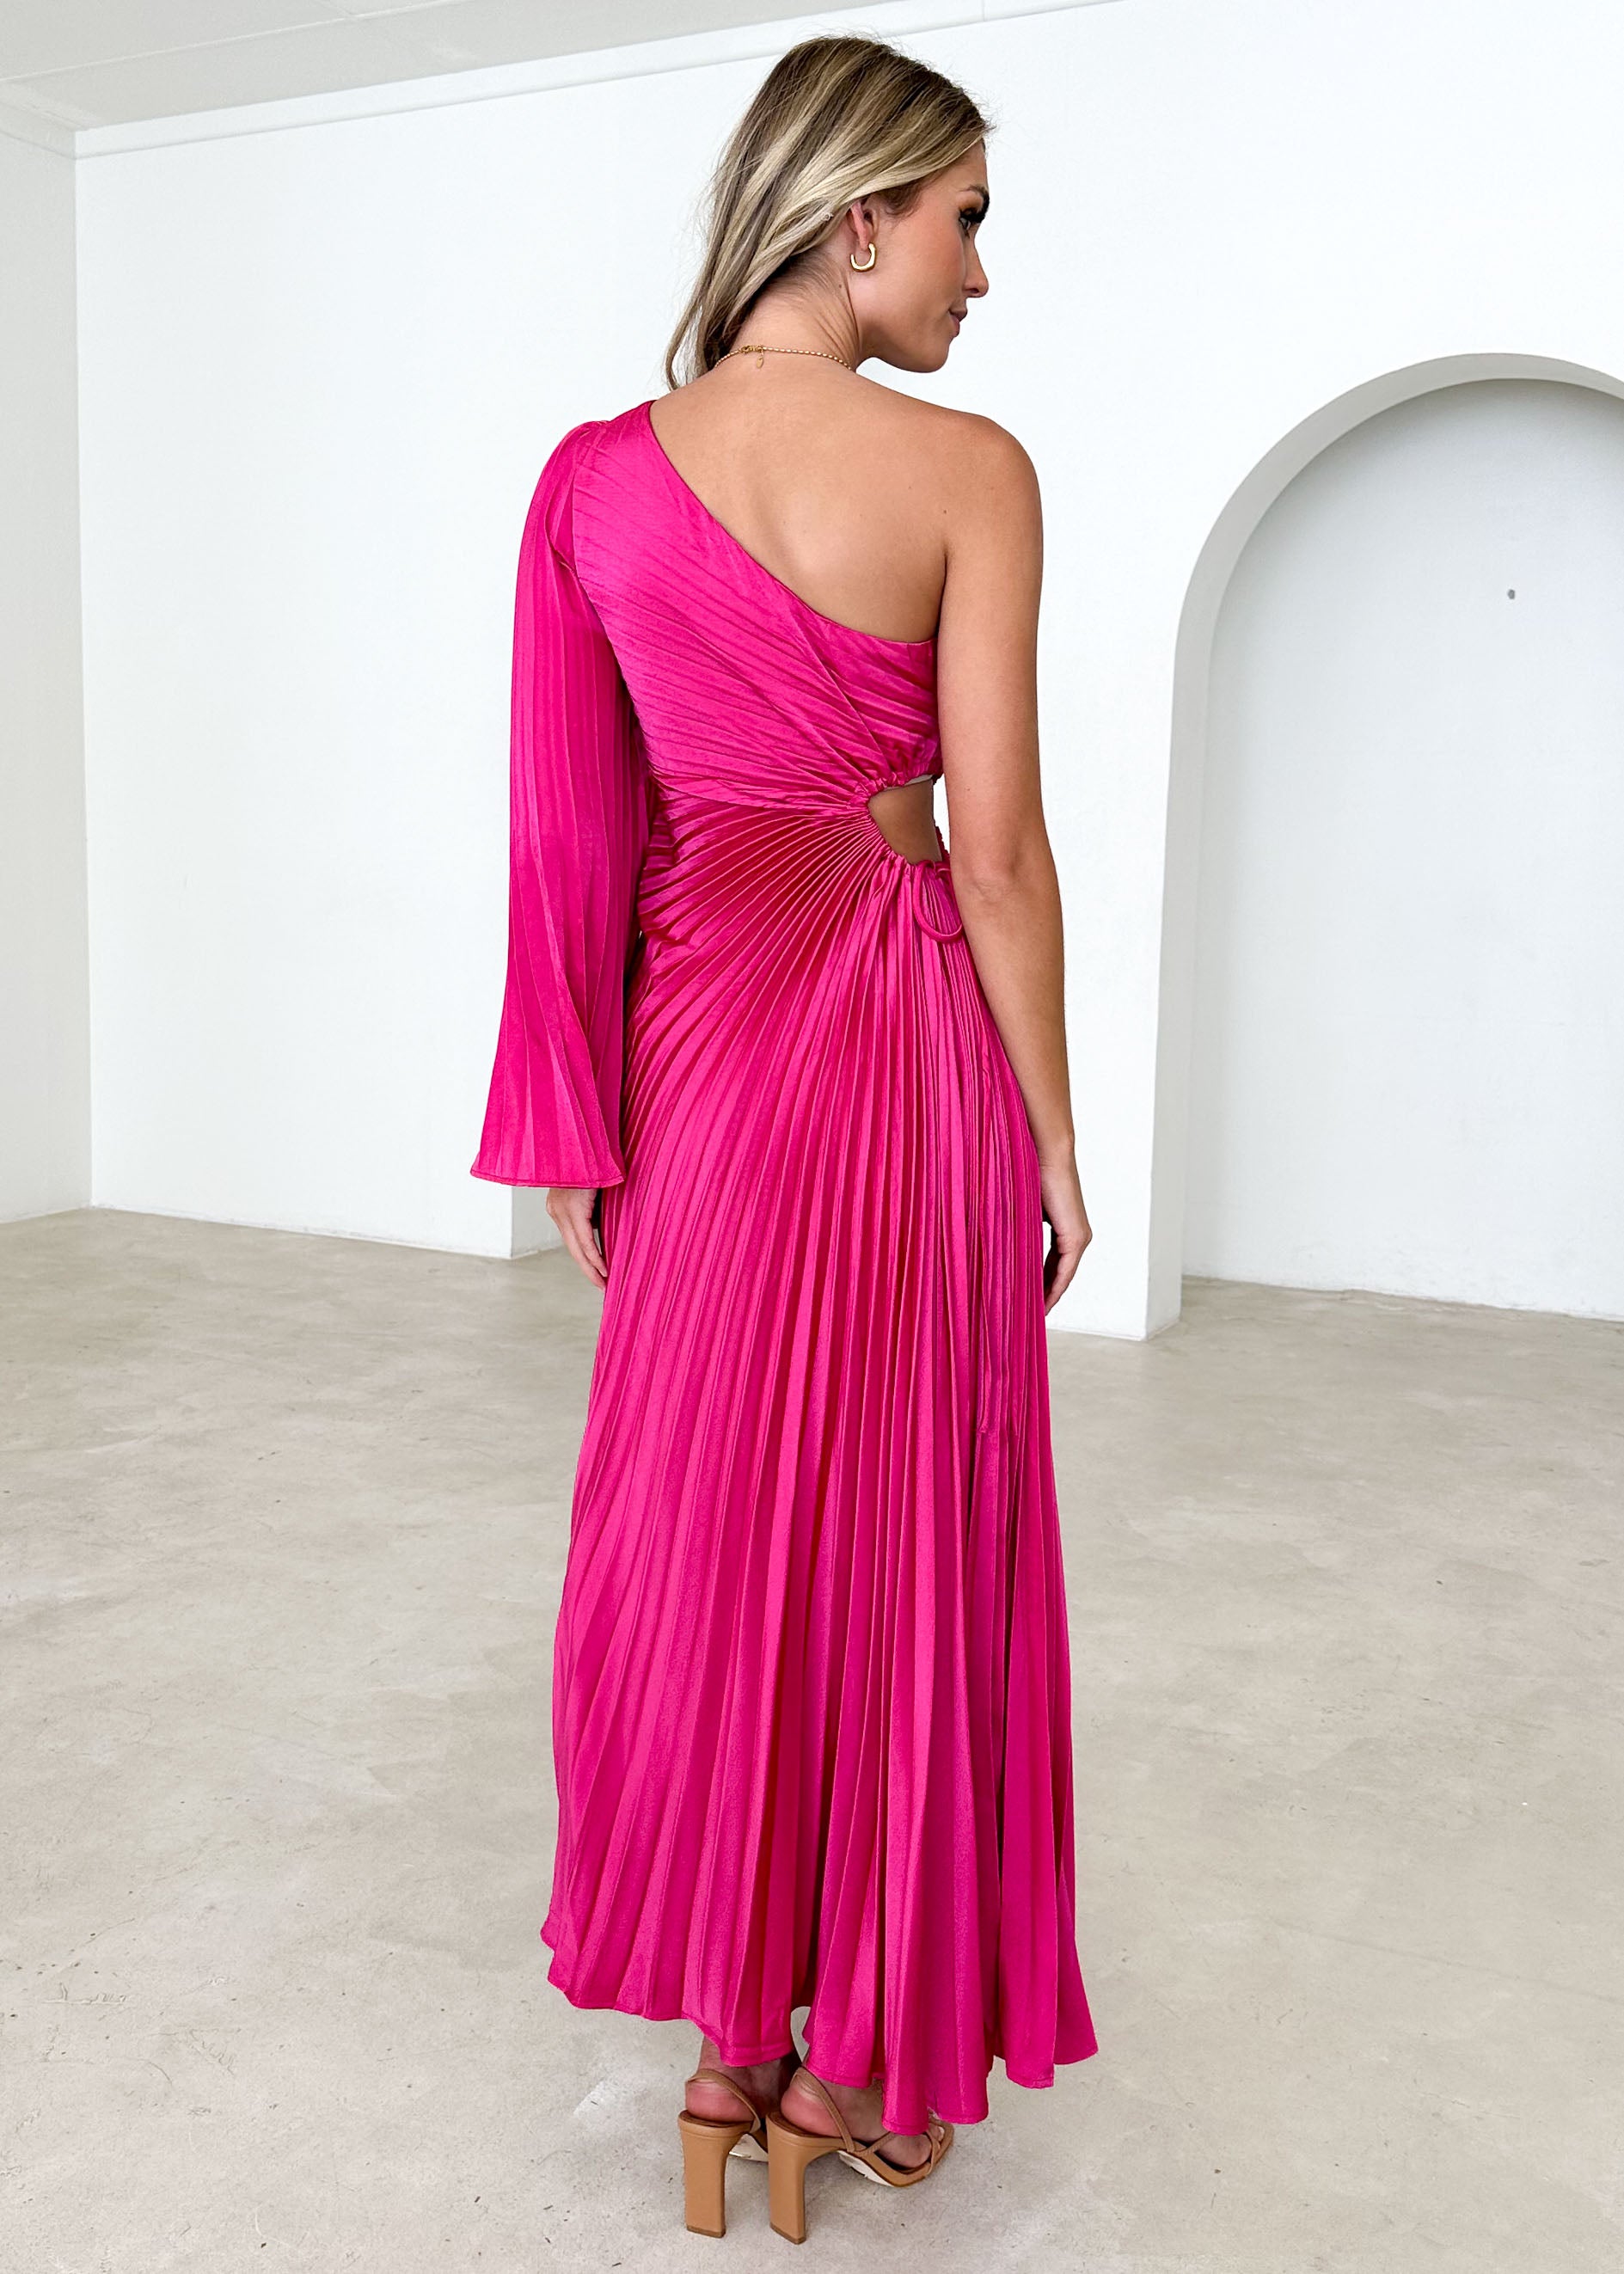 Amore One Shoulder Midi Dress - Hot Pink